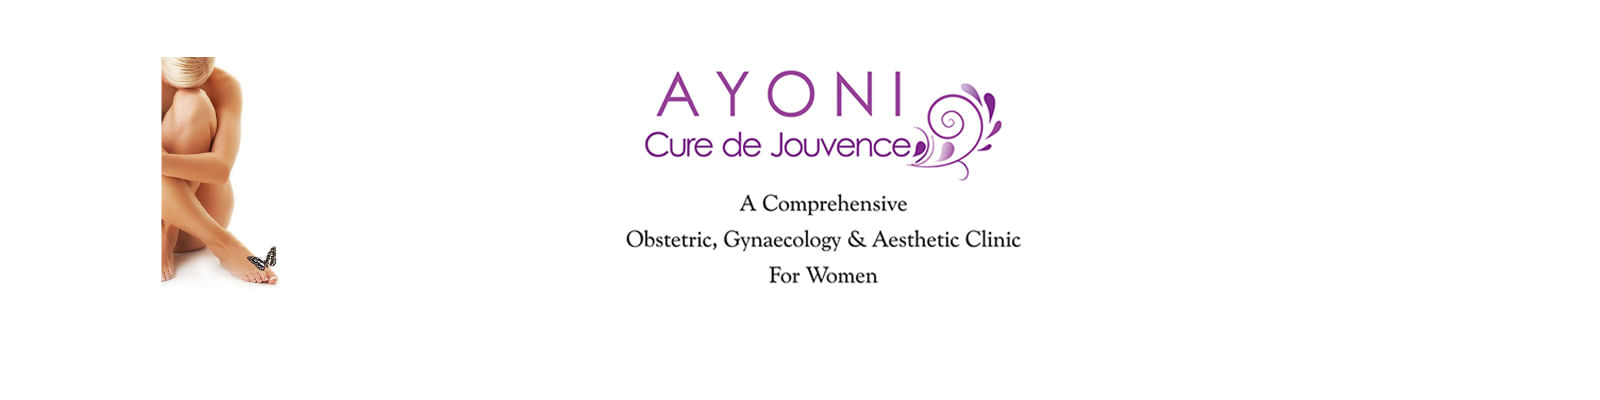 Ayoni Cure De Jouvence